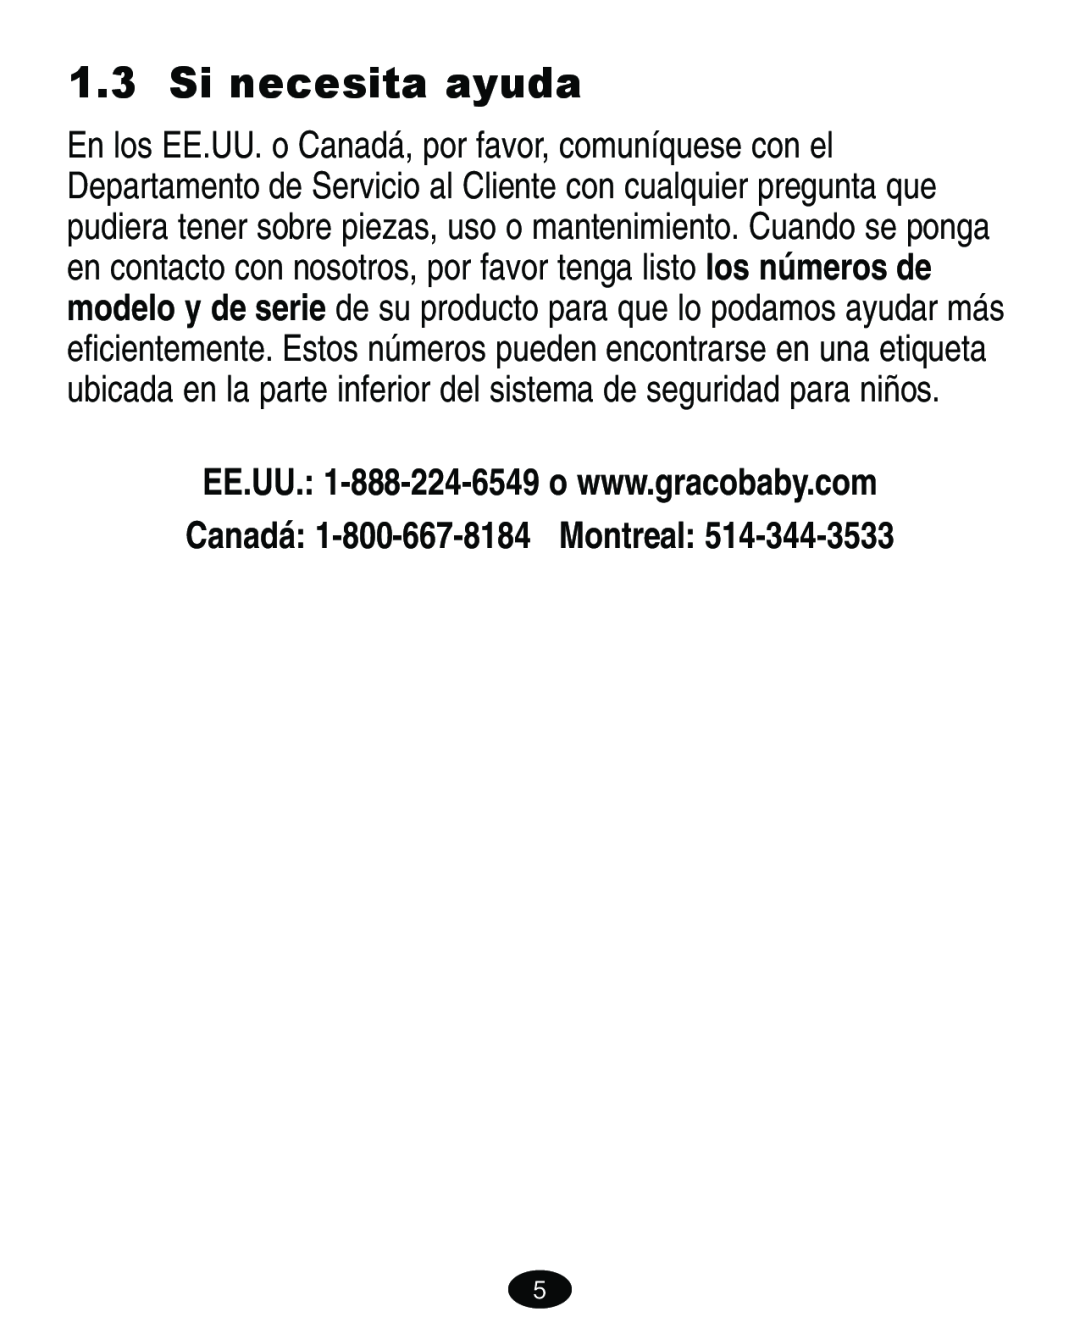 Graco 4460402 manual Si necesita ayuda, Canadá 1-800-667-8184 Montreal 